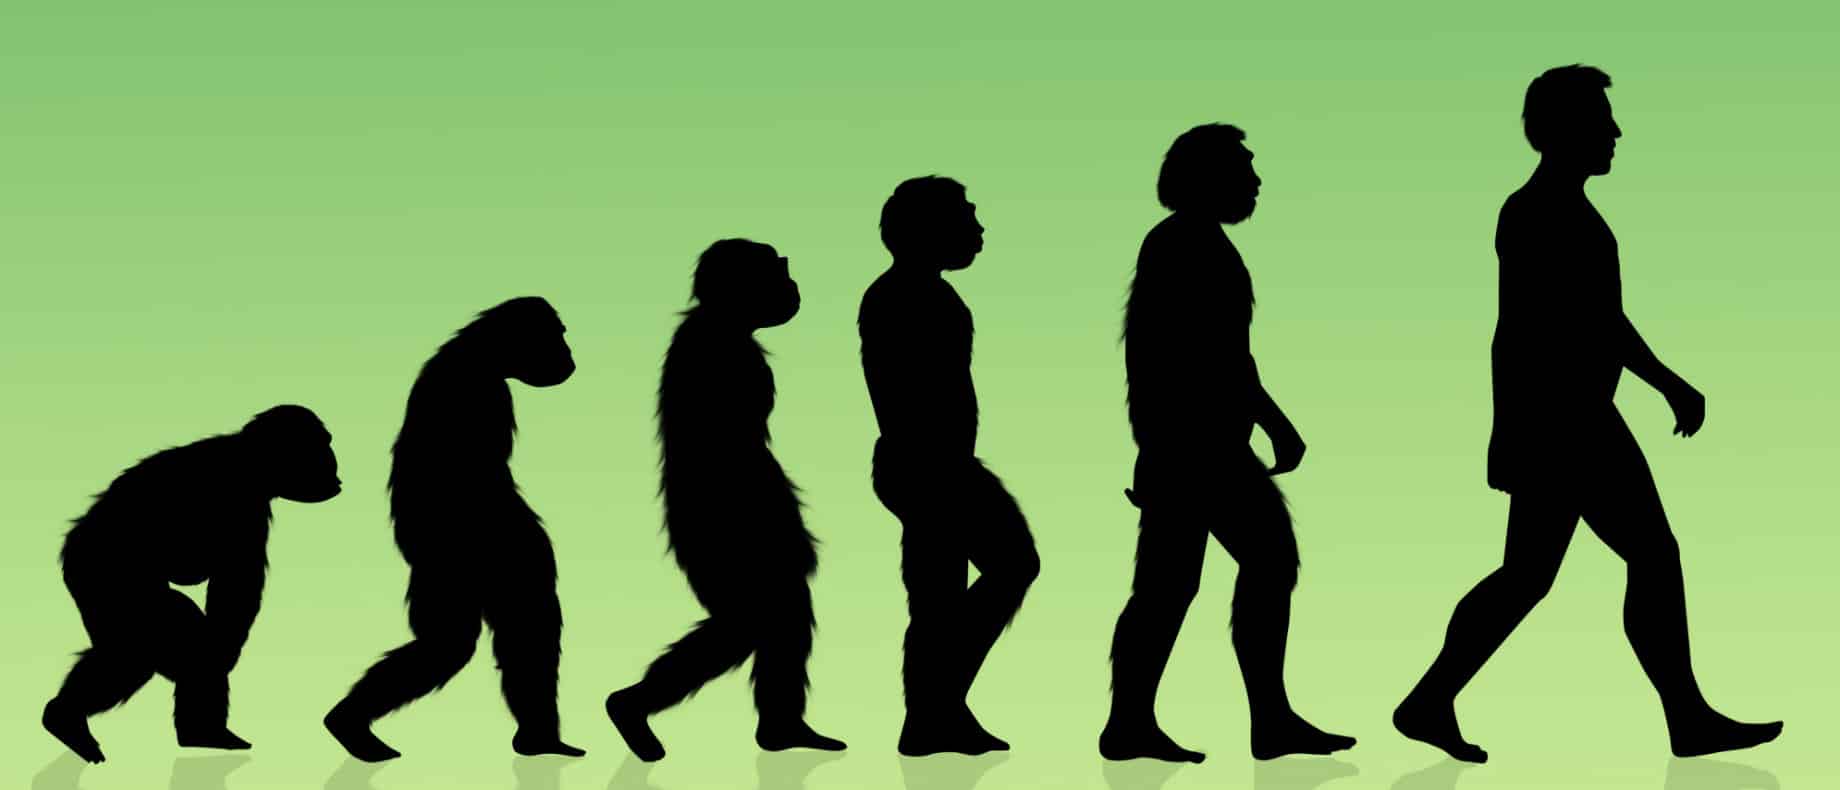 Evolução humana: início, gênero homo e homem moderno